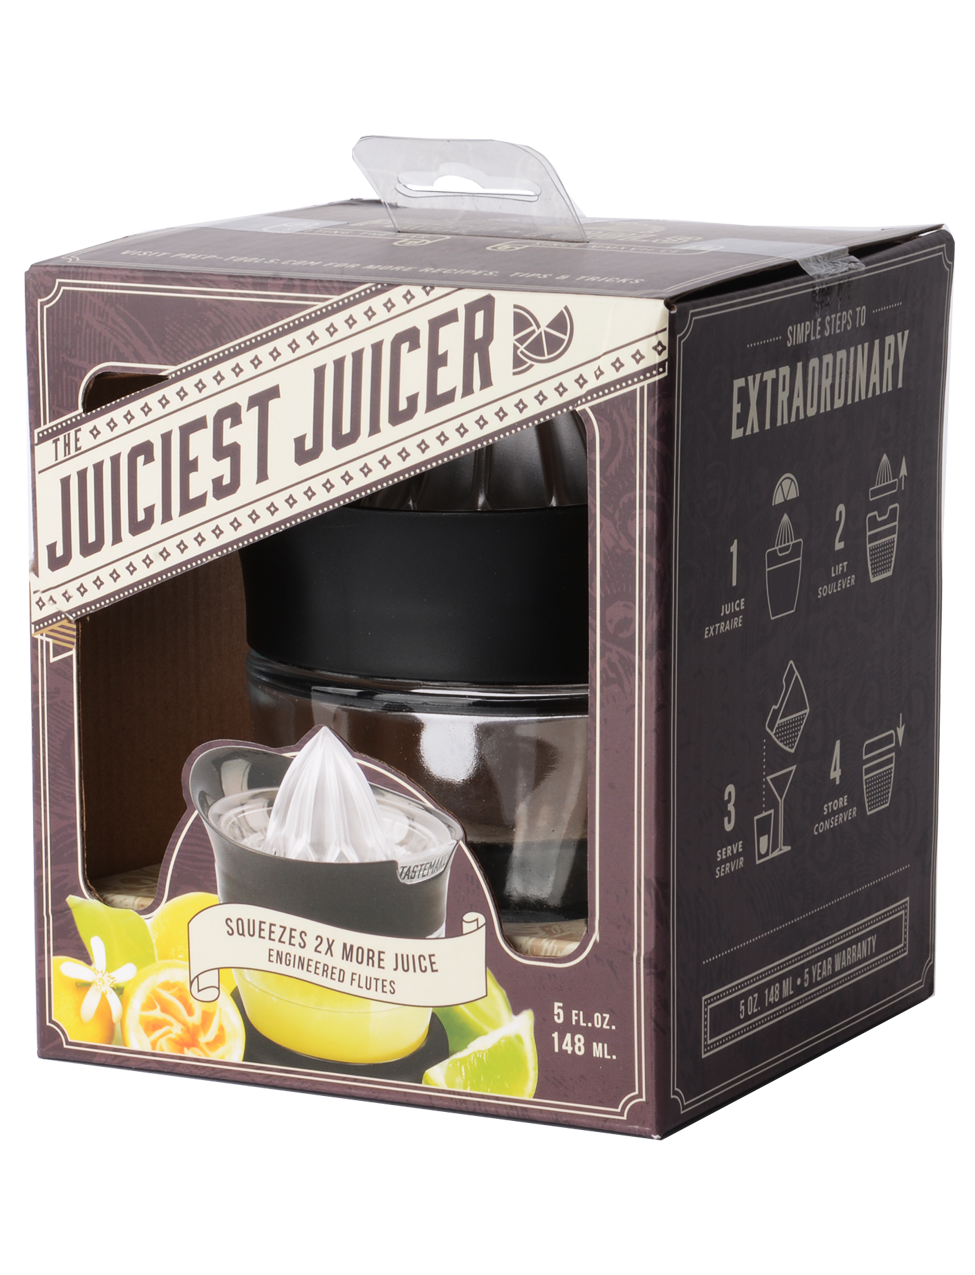 Tastemaker Collection: The Juiciest Juicer